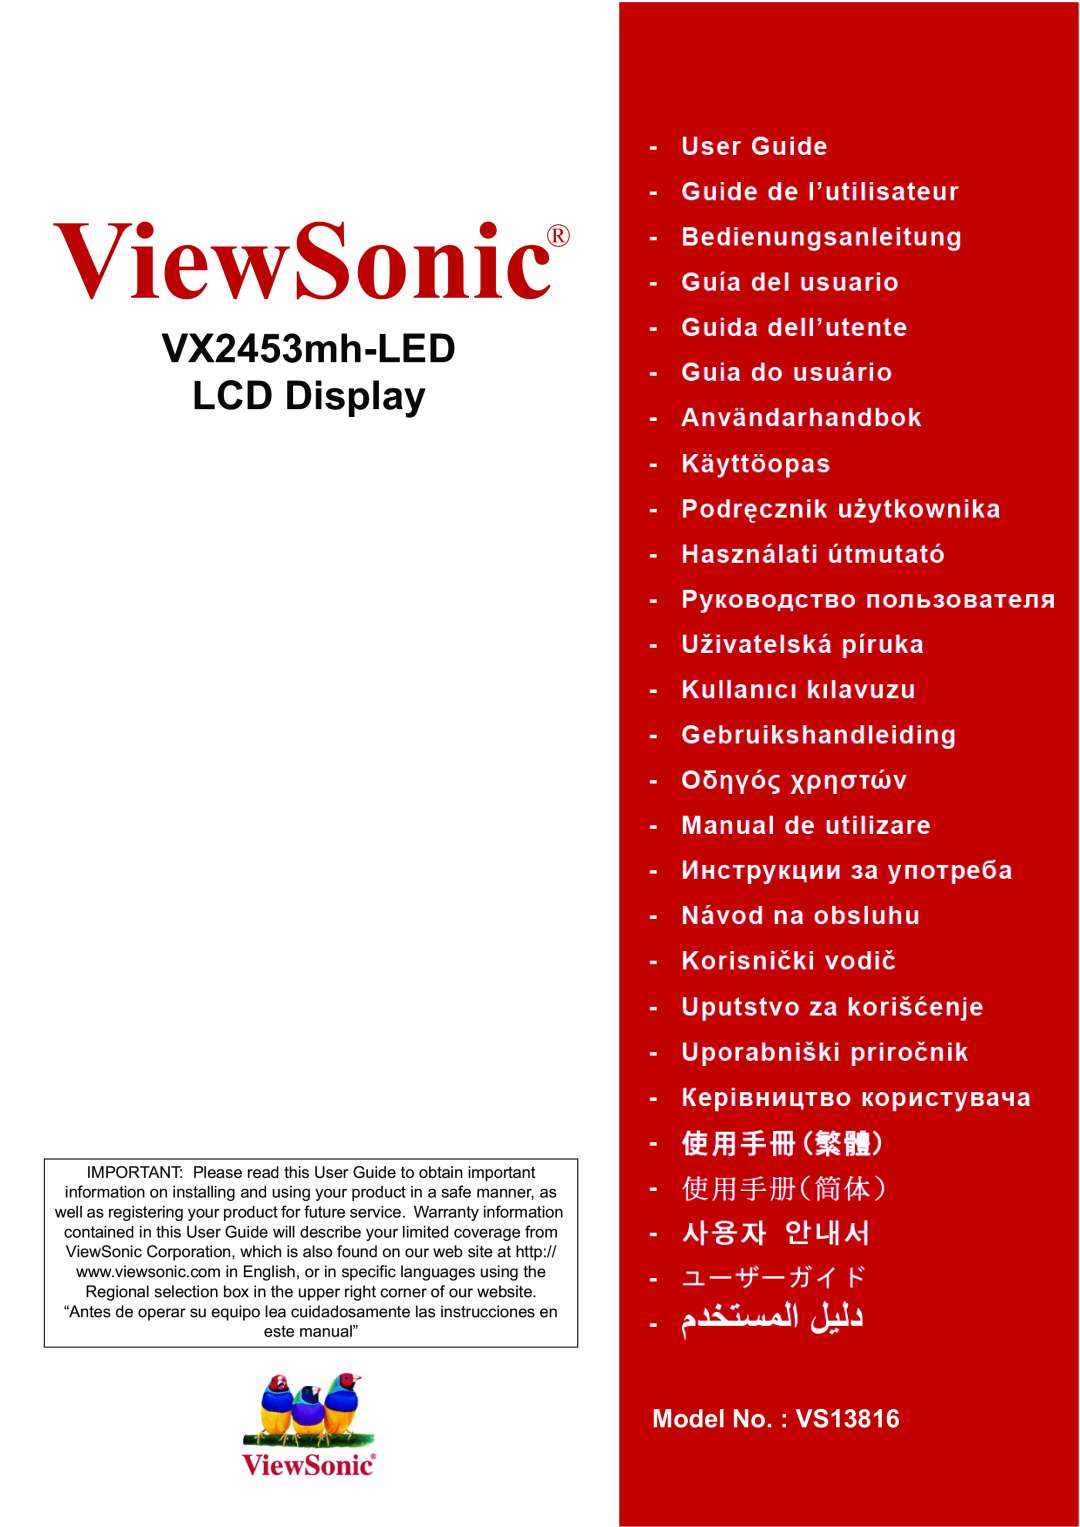 ViewSonic VX2460h-LED, VX2453MH-LED warranty ViewSonic, VX2453mh-LED LCD Display, Model No. VS13816 